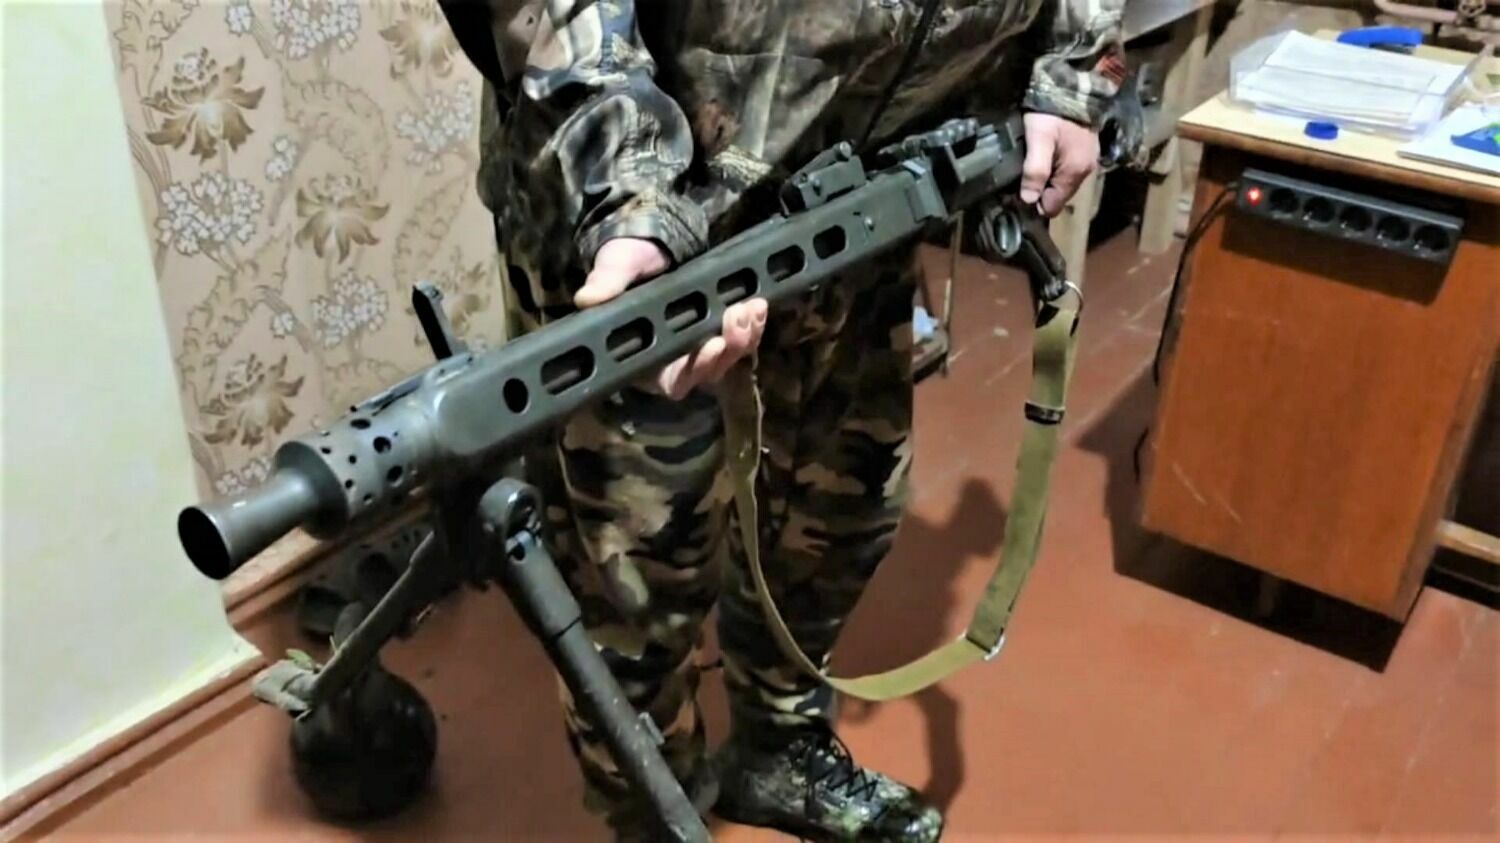 Пулемет MG 42